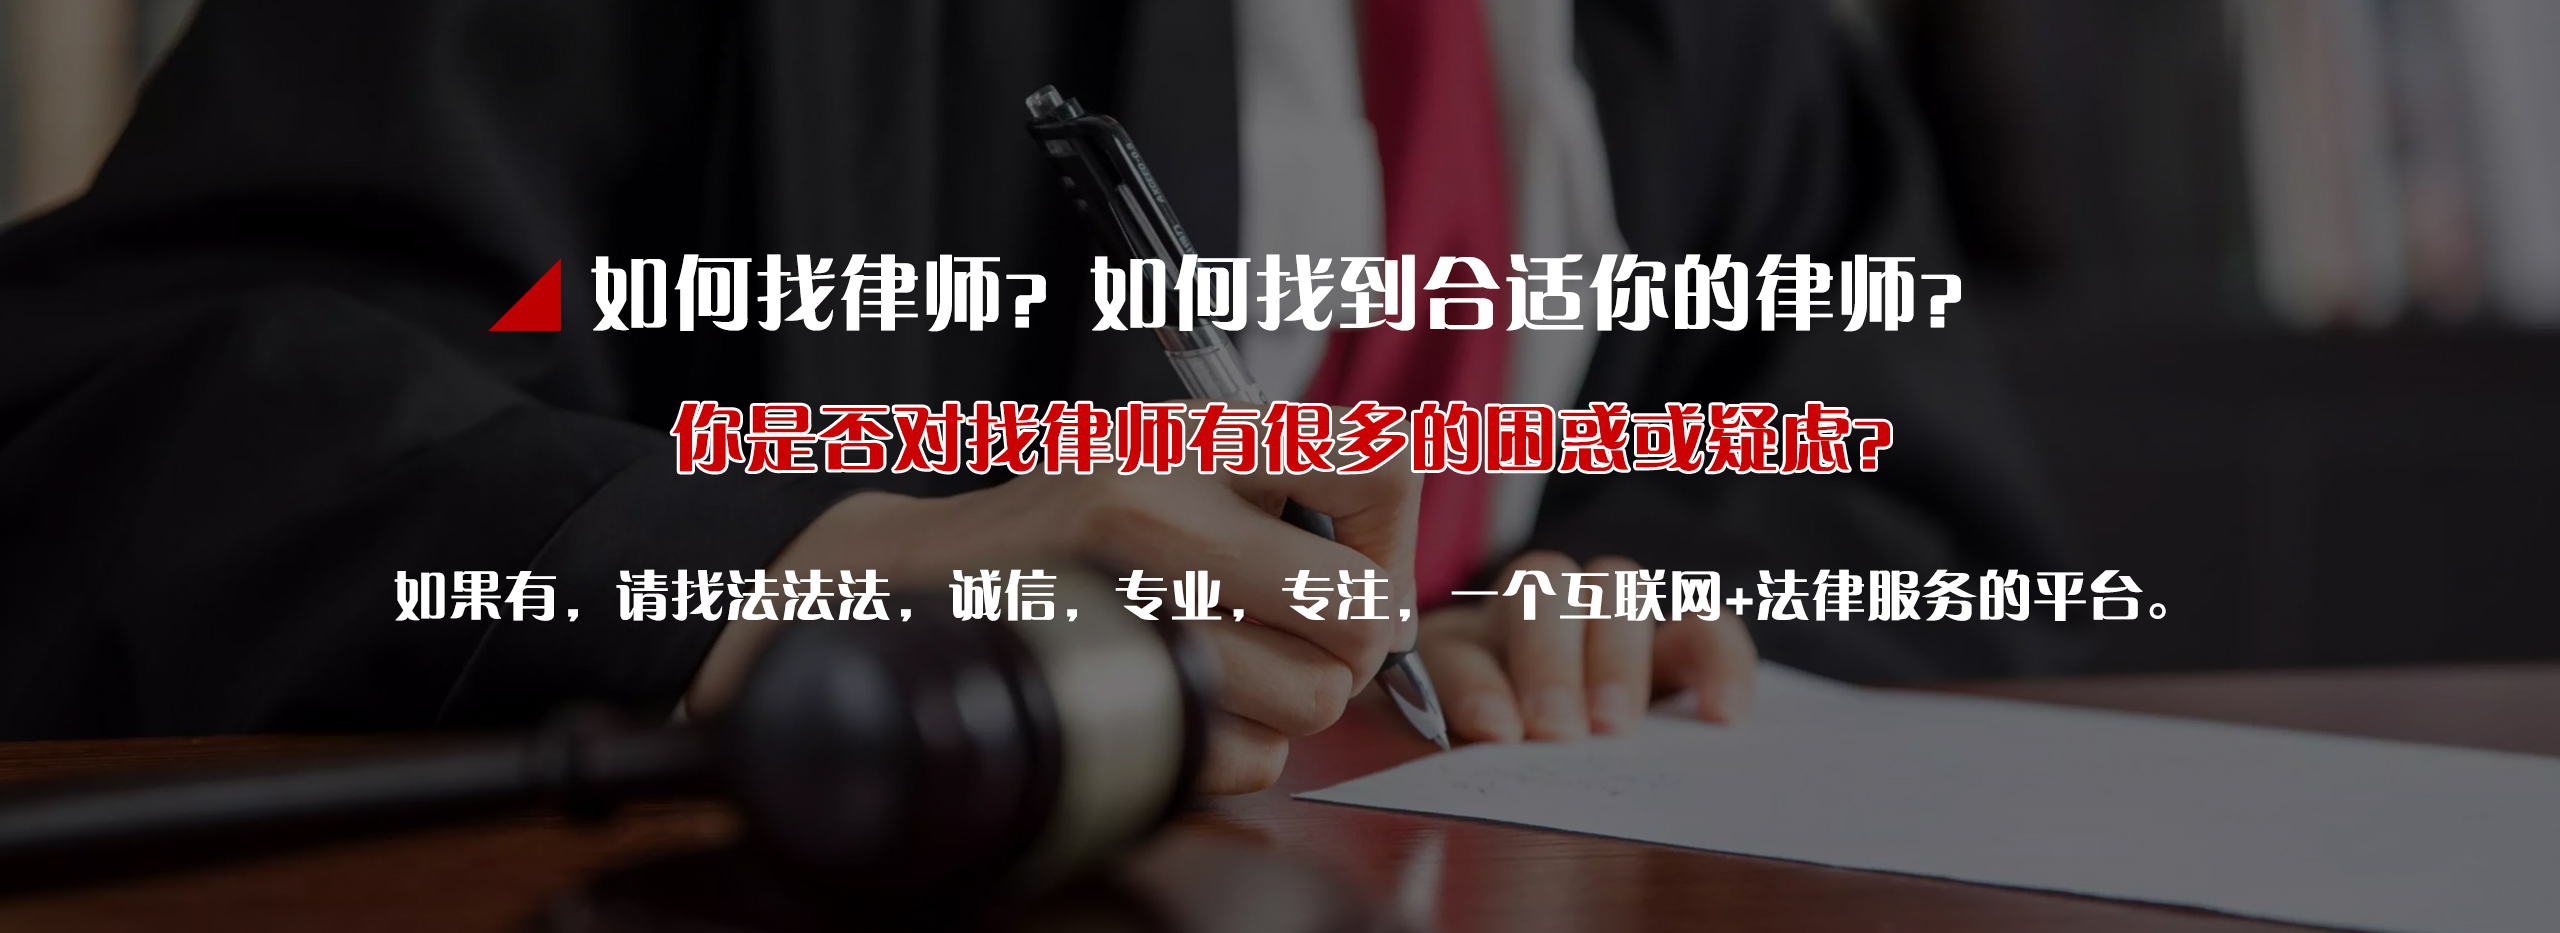 消费者维权_玩转好货法律服务-四川法法法信息科技有限公司